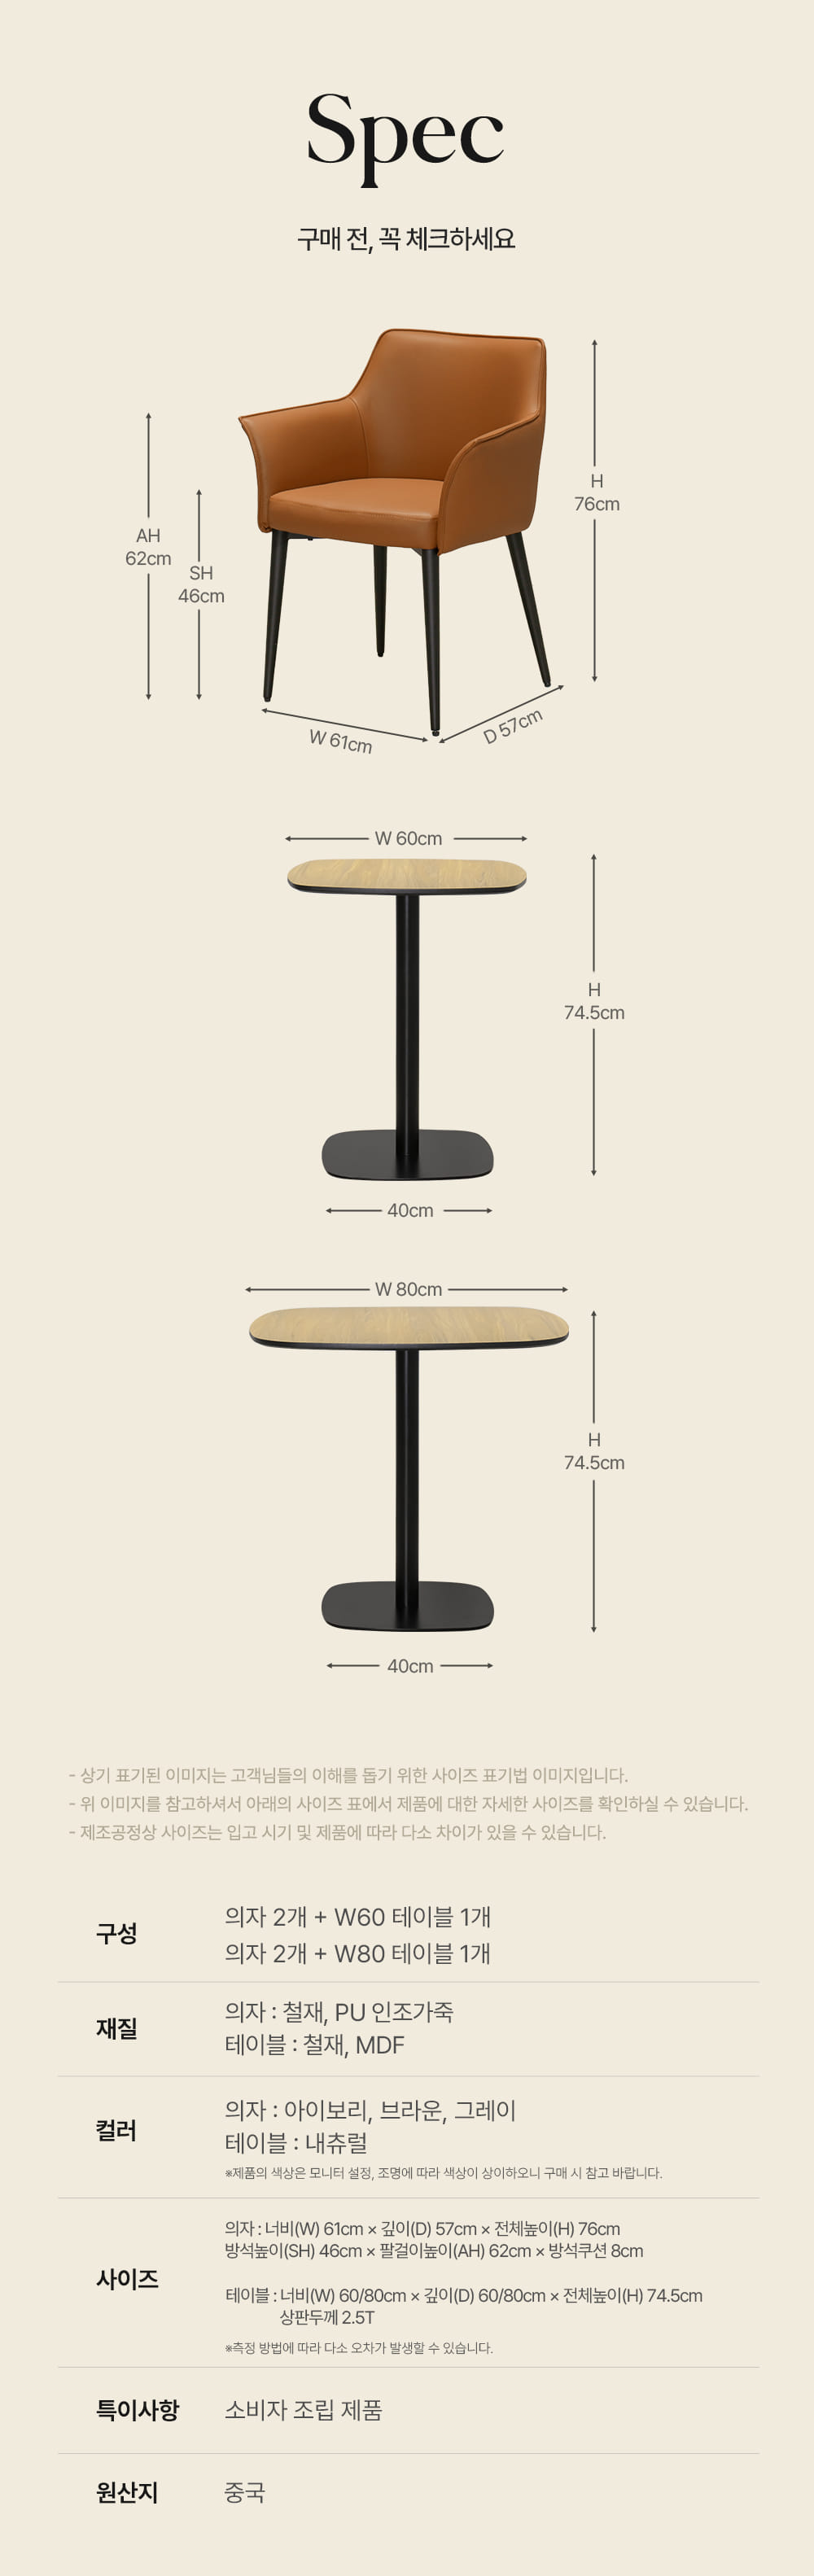 마지베이직테이블세트 테이블, 의자, 세트, 2인, 철재프레임, PU가죽, 인테리어의자, 인테리어테이블, 디자인의자, 디자인테이블, 카페, 레스토랑